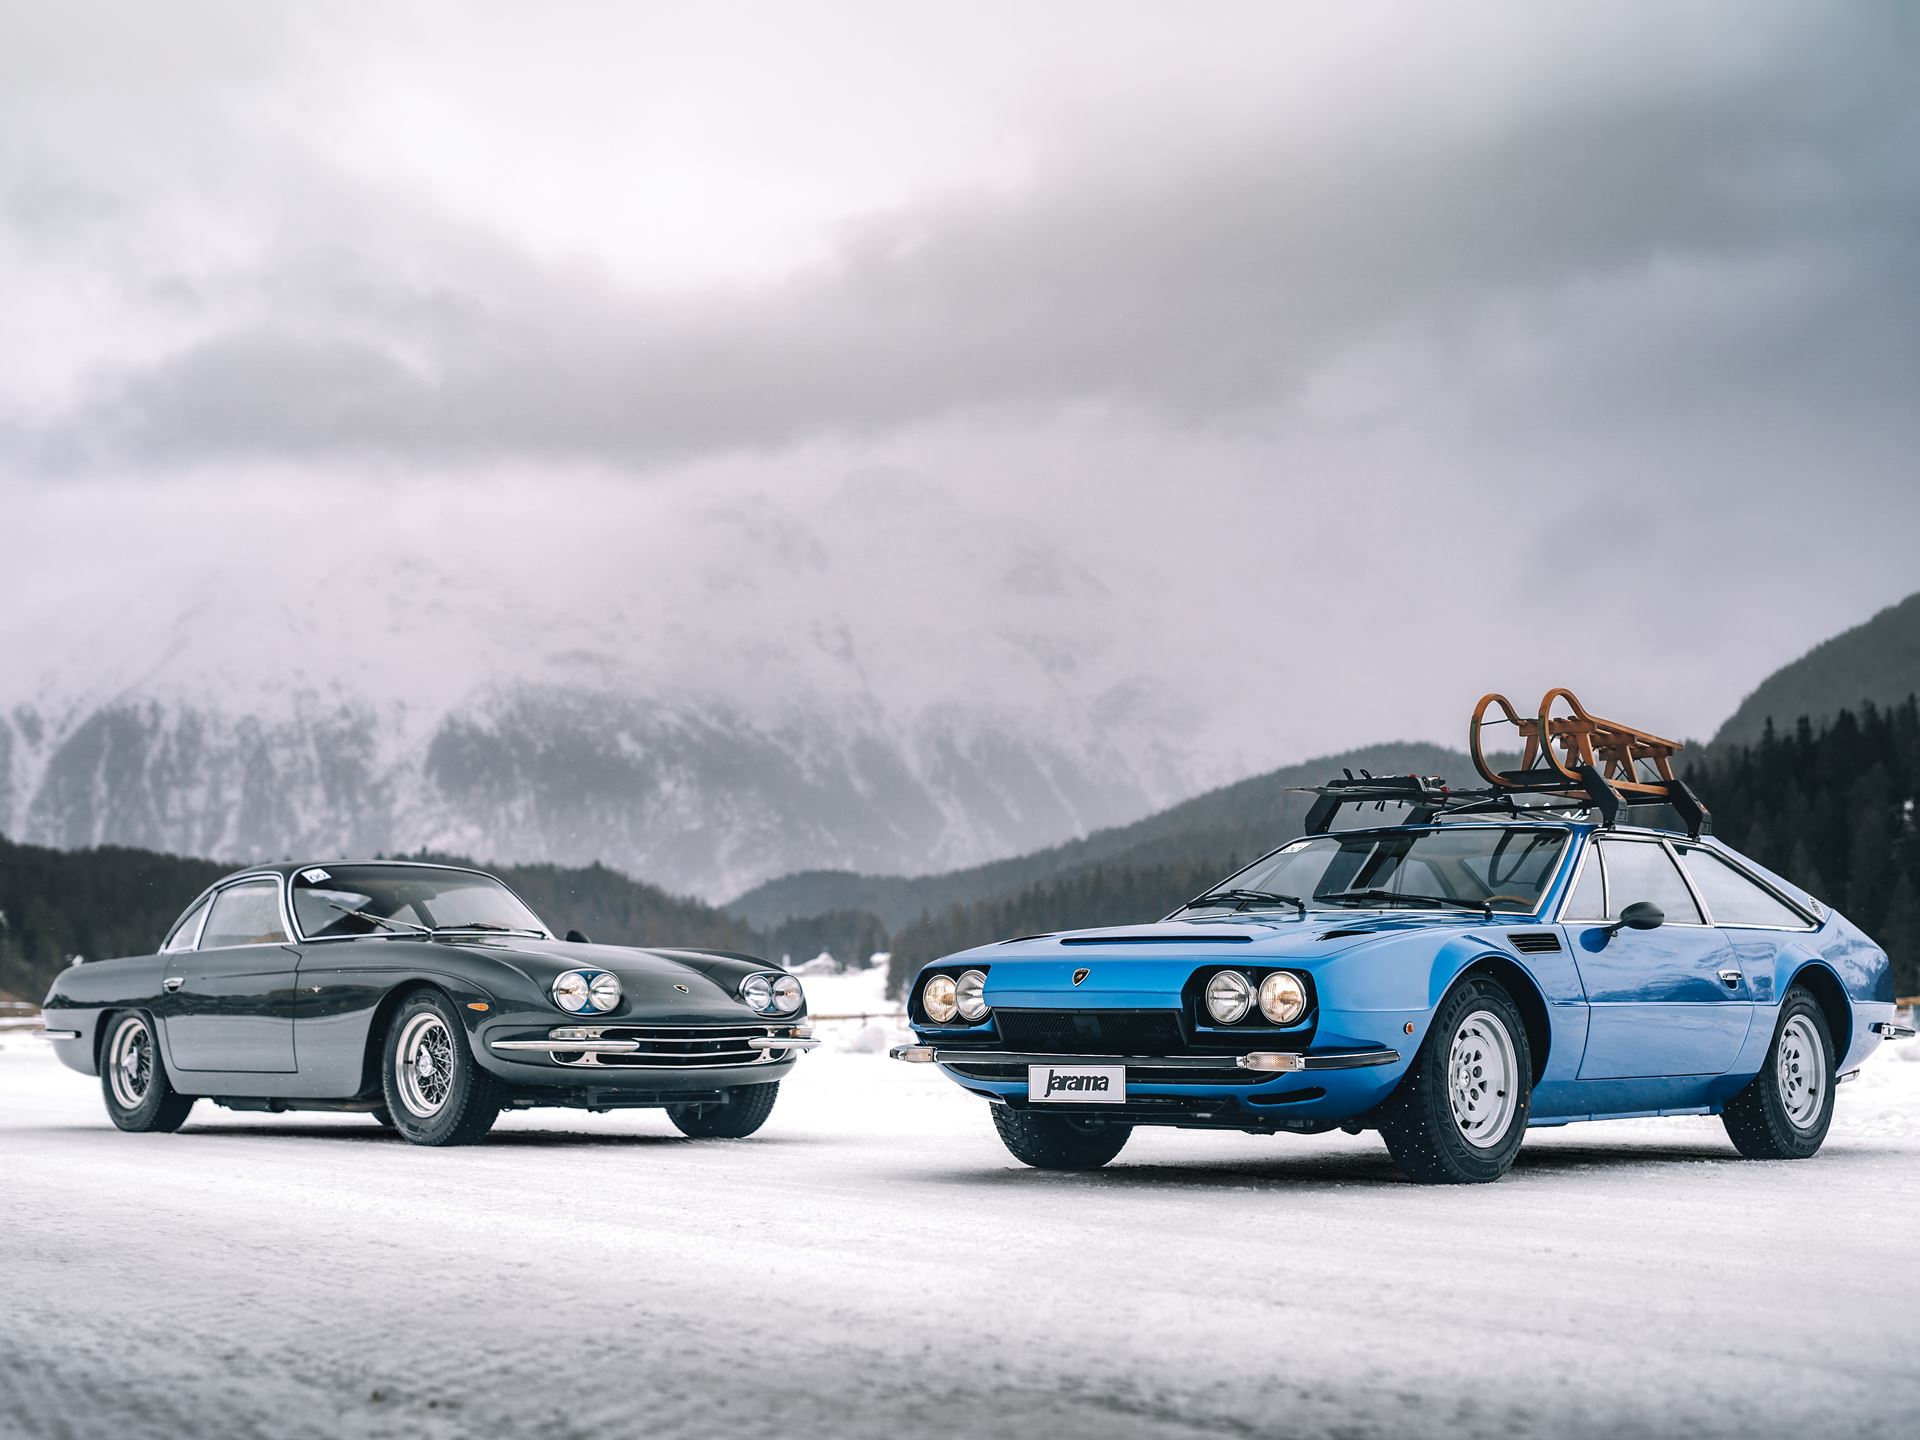 Modelos históricos da Automobili Lamborghini fazem furor no lago gelado de St. Moritz: veja as fotos do evento